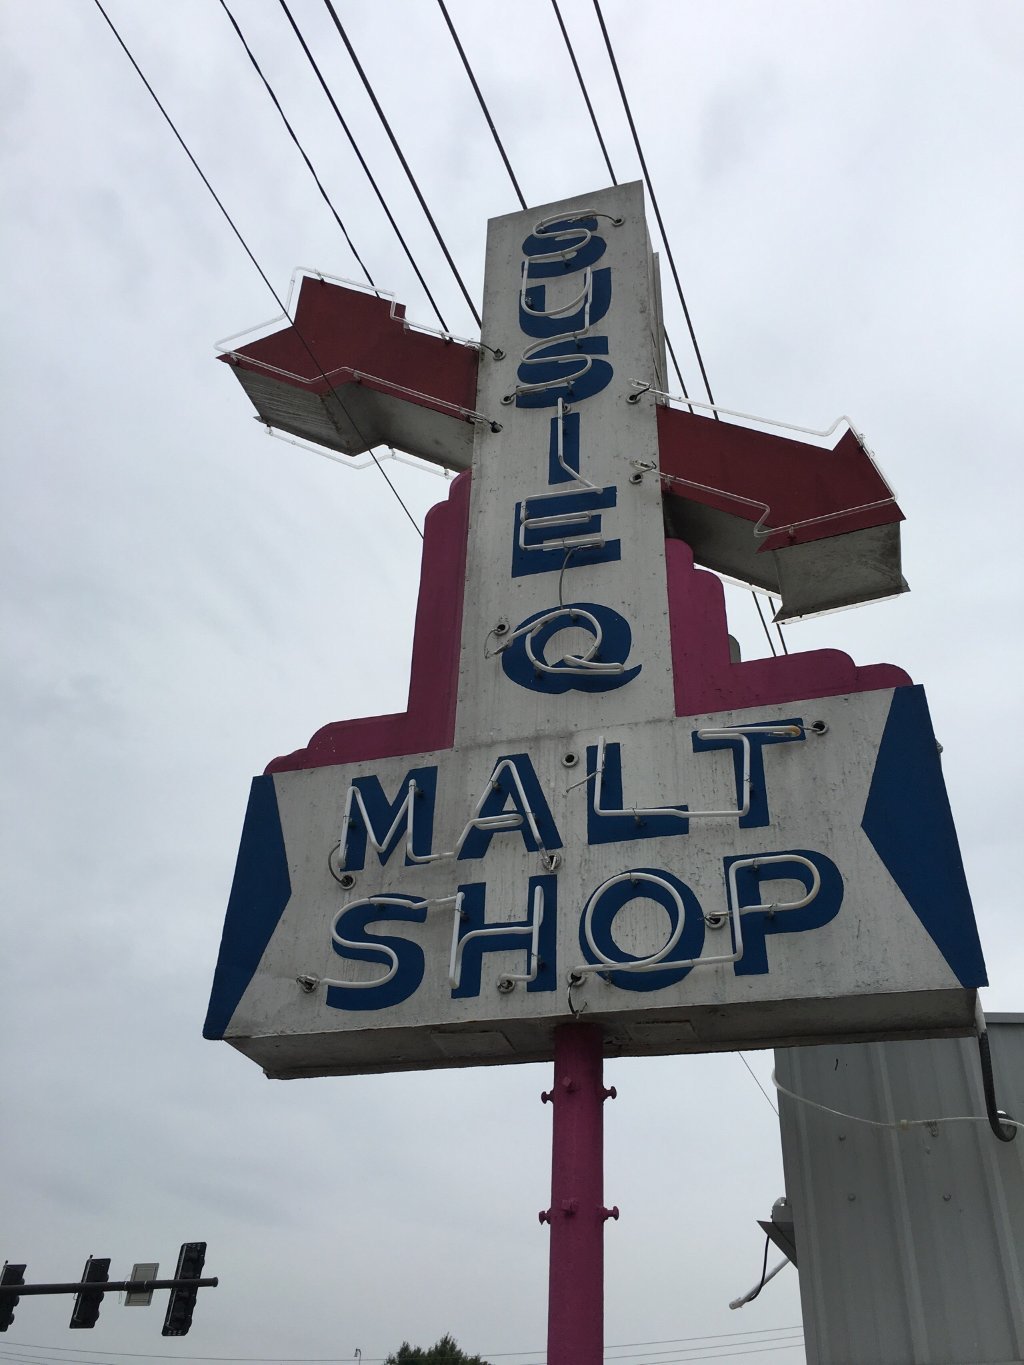 Susie Q Malt Shop